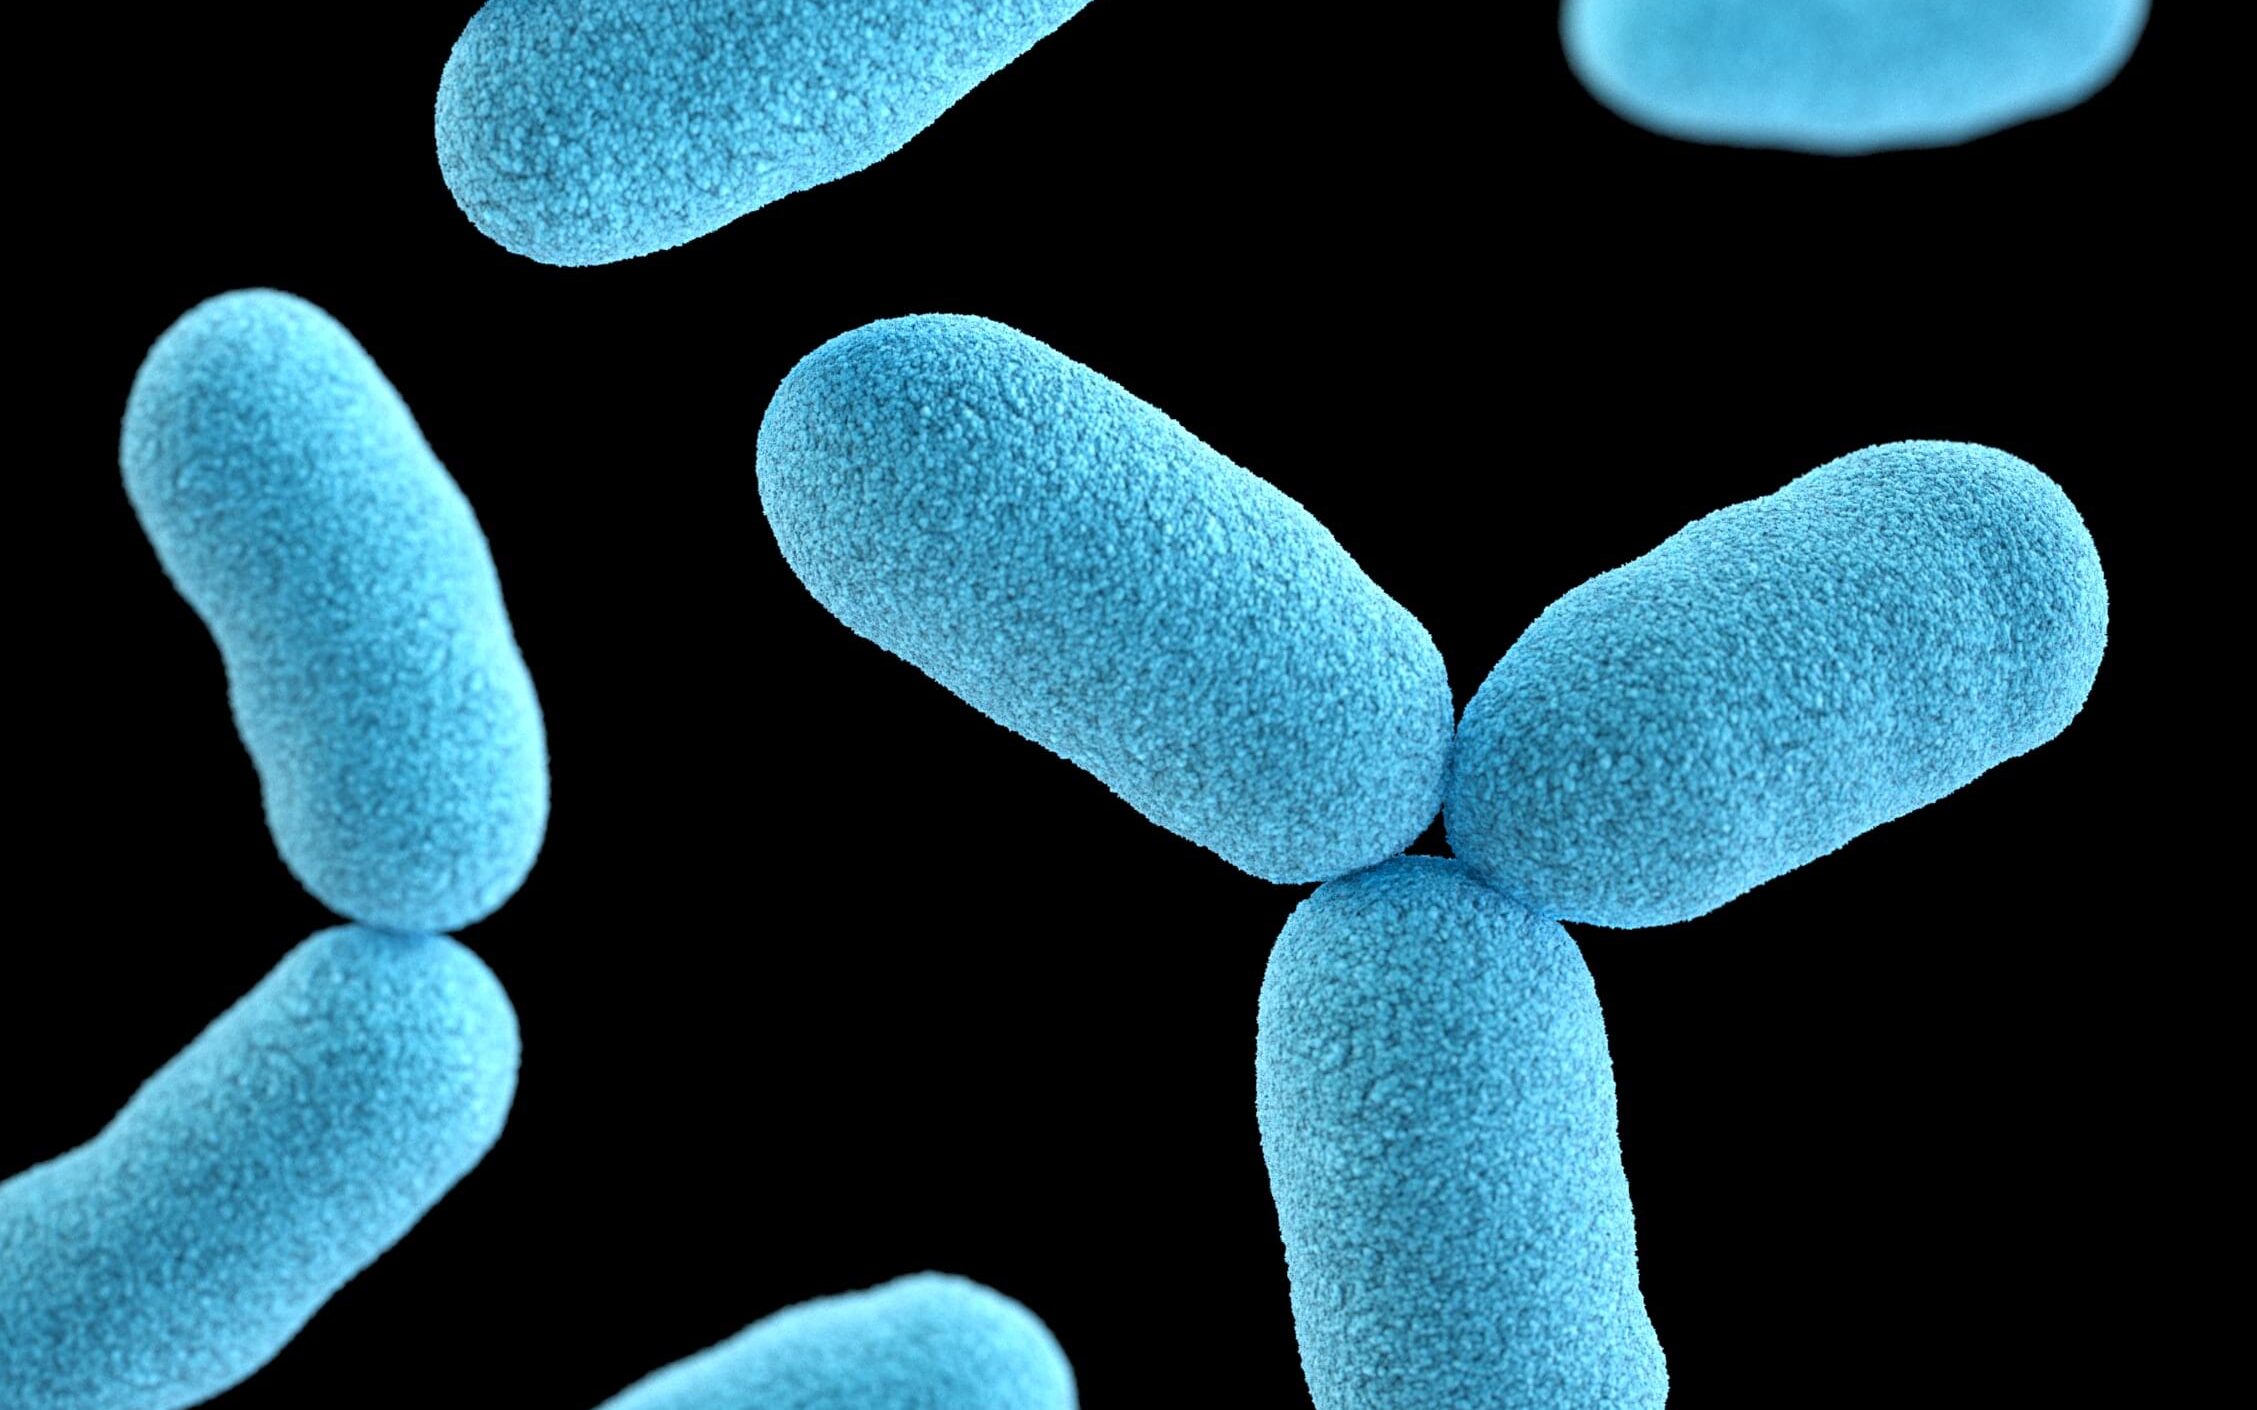 the bacteria Serratia